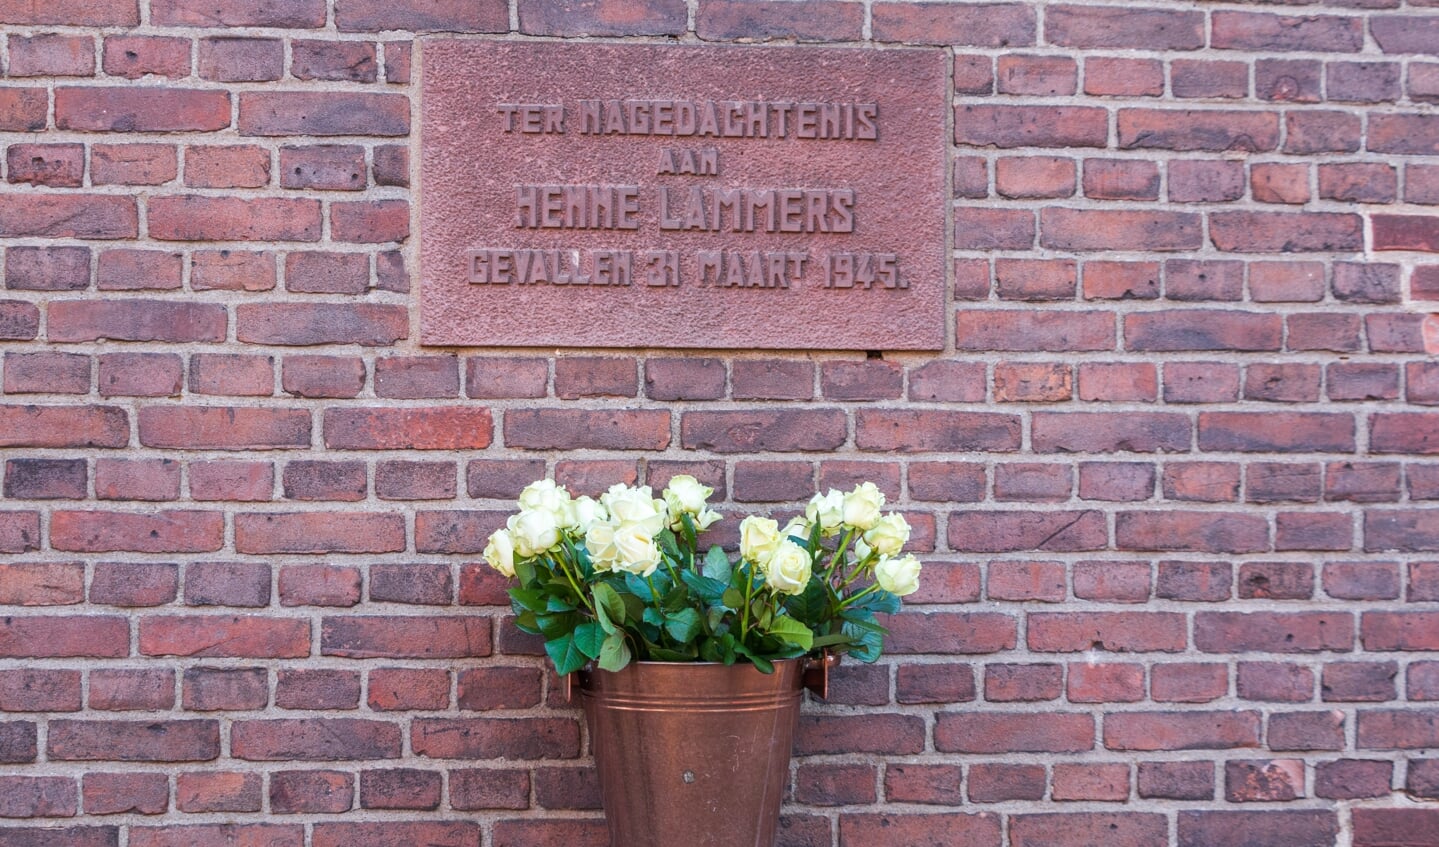 Het monument met de emmer met rozen. Foto: Henk Derksen